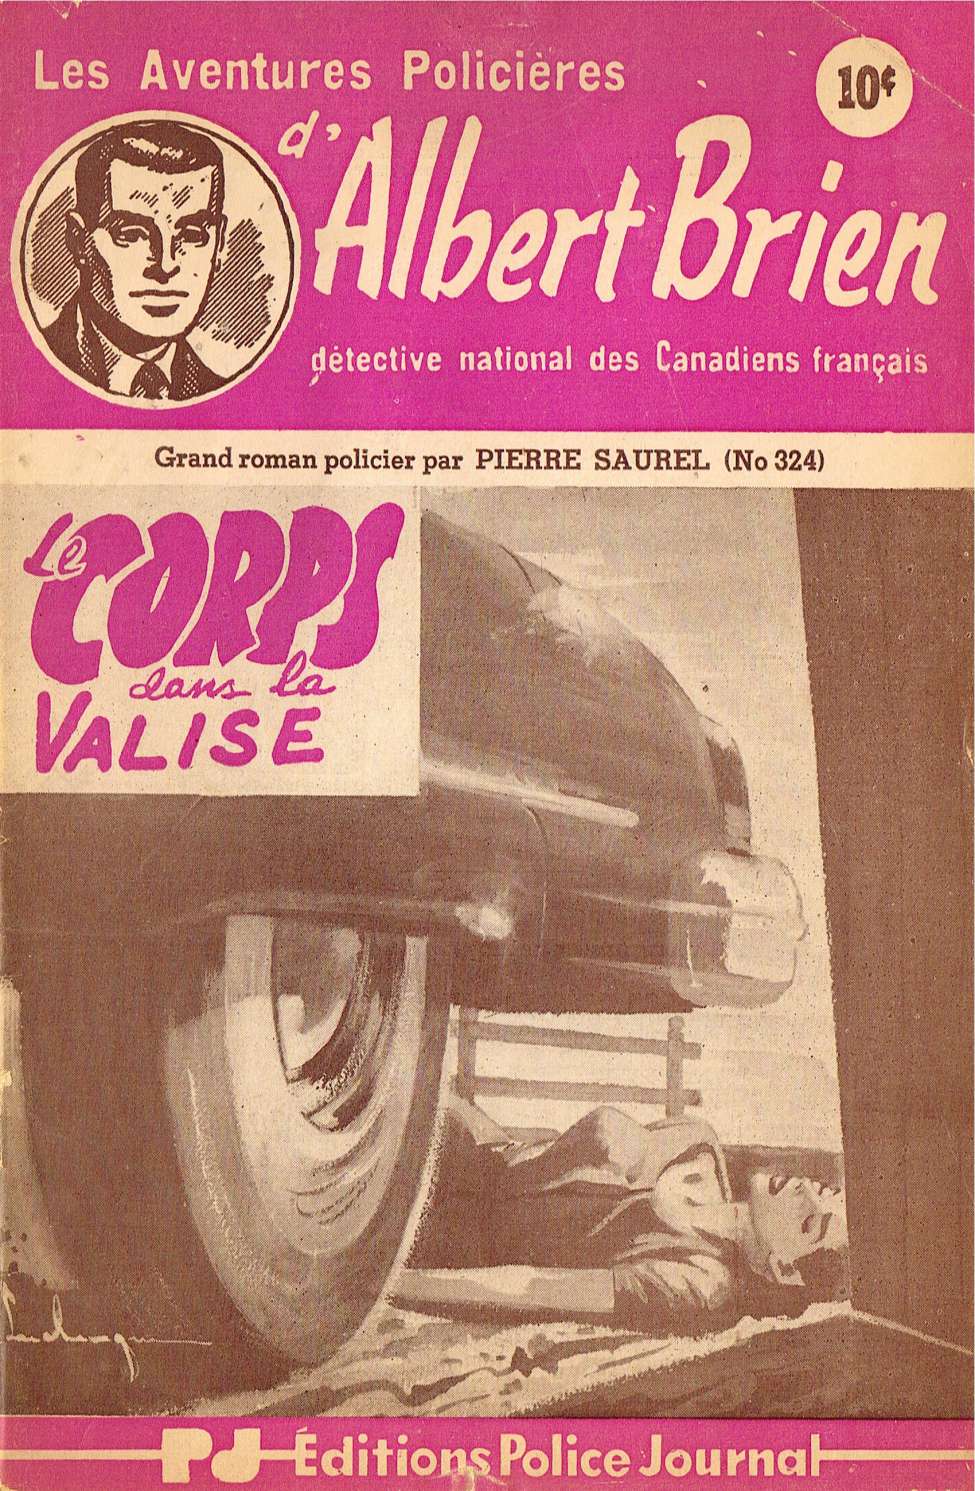 Book Cover For Albert Brien v2 324 - Le corps dans la valise